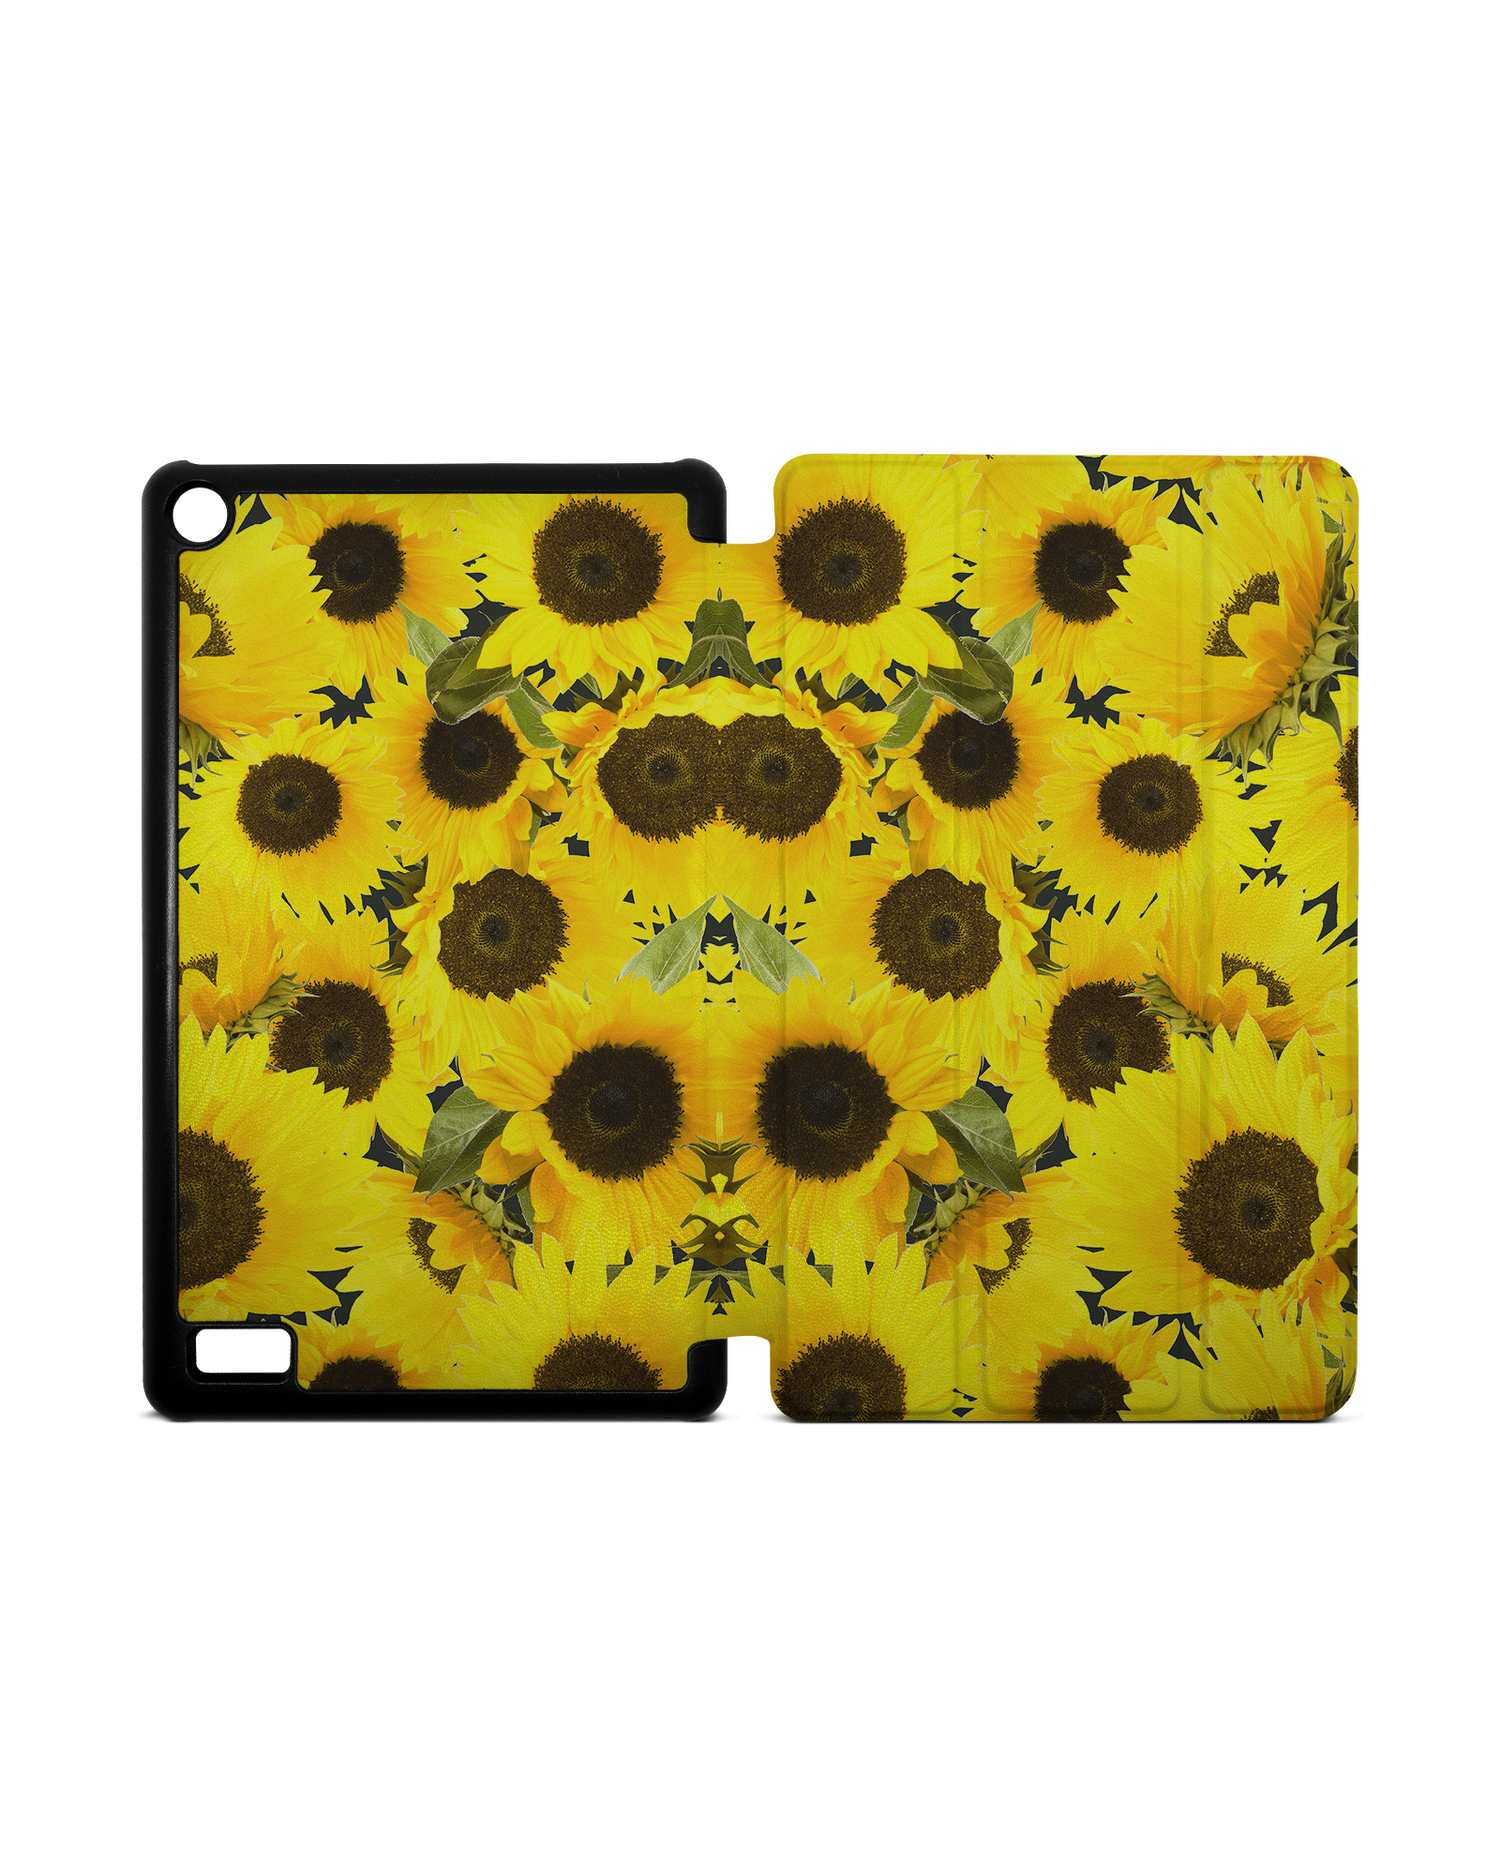 Sunflowers Tablet Smart Case für Amazon Fire 7: Aufgeklappt